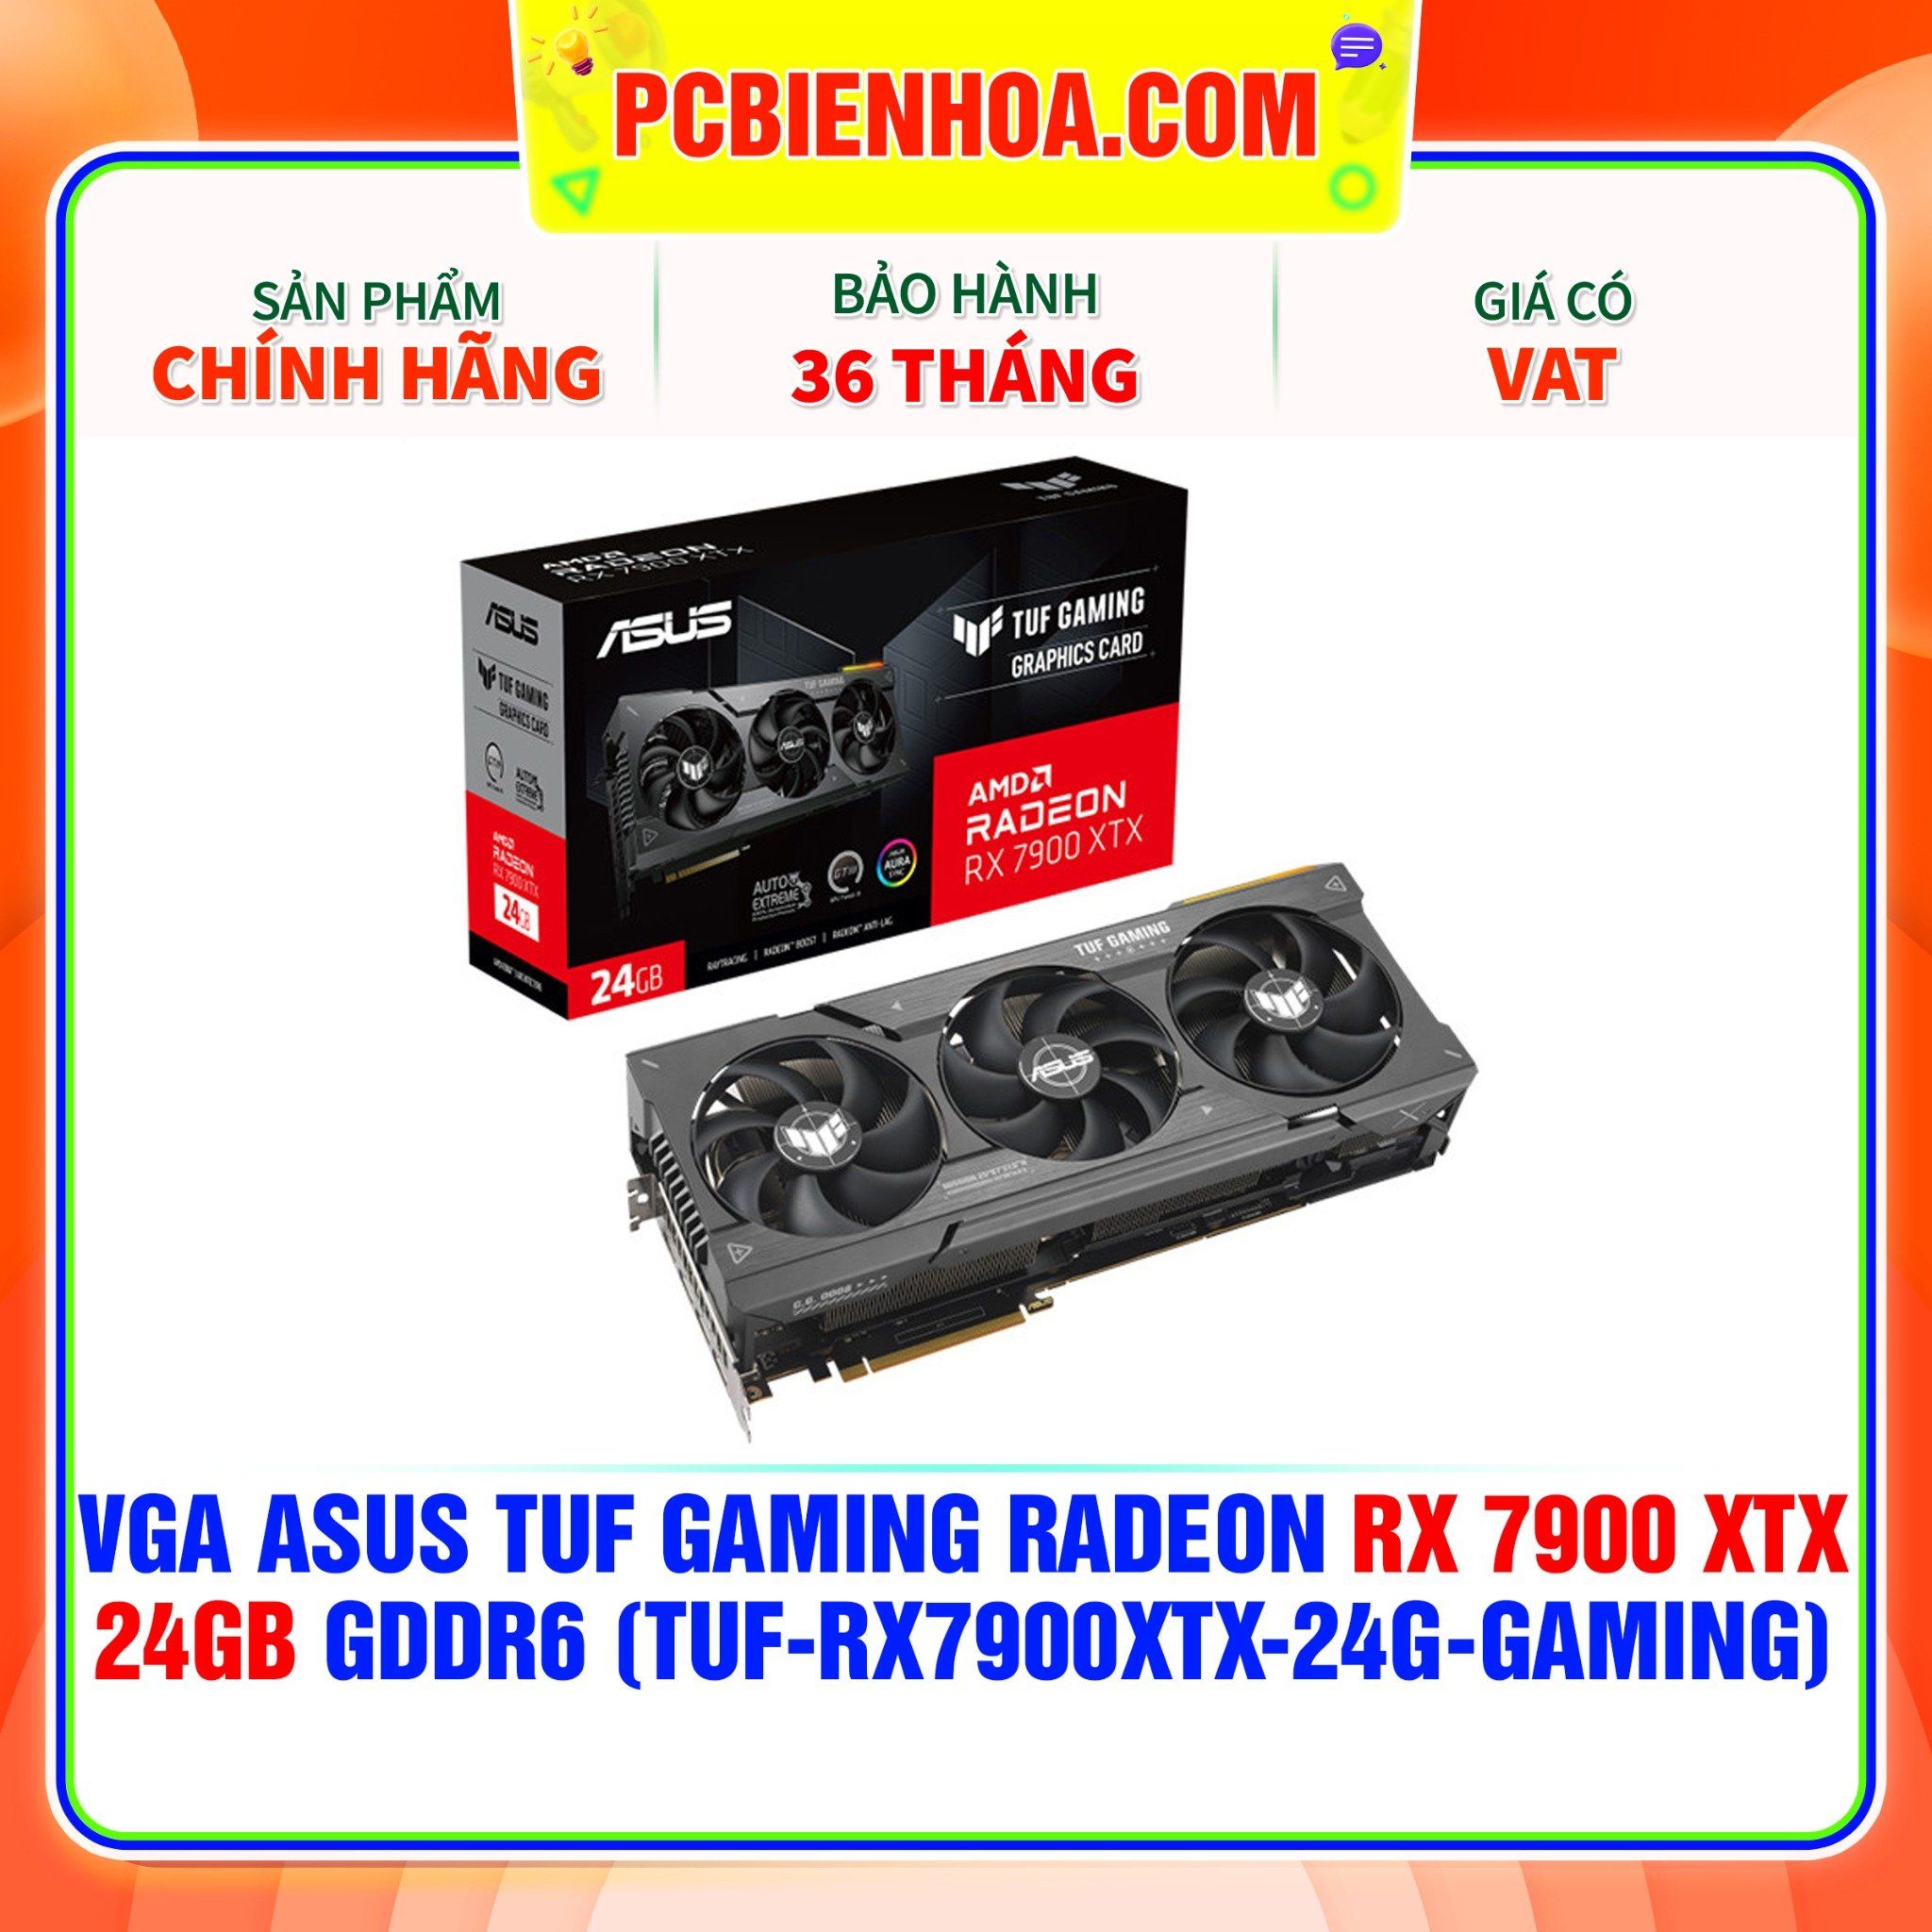  VGA ASUS TUF Gaming Radeon RX 7900 XTX 24GB GDDR6 (TUF-RX7900XTX-24G-GAMING) 